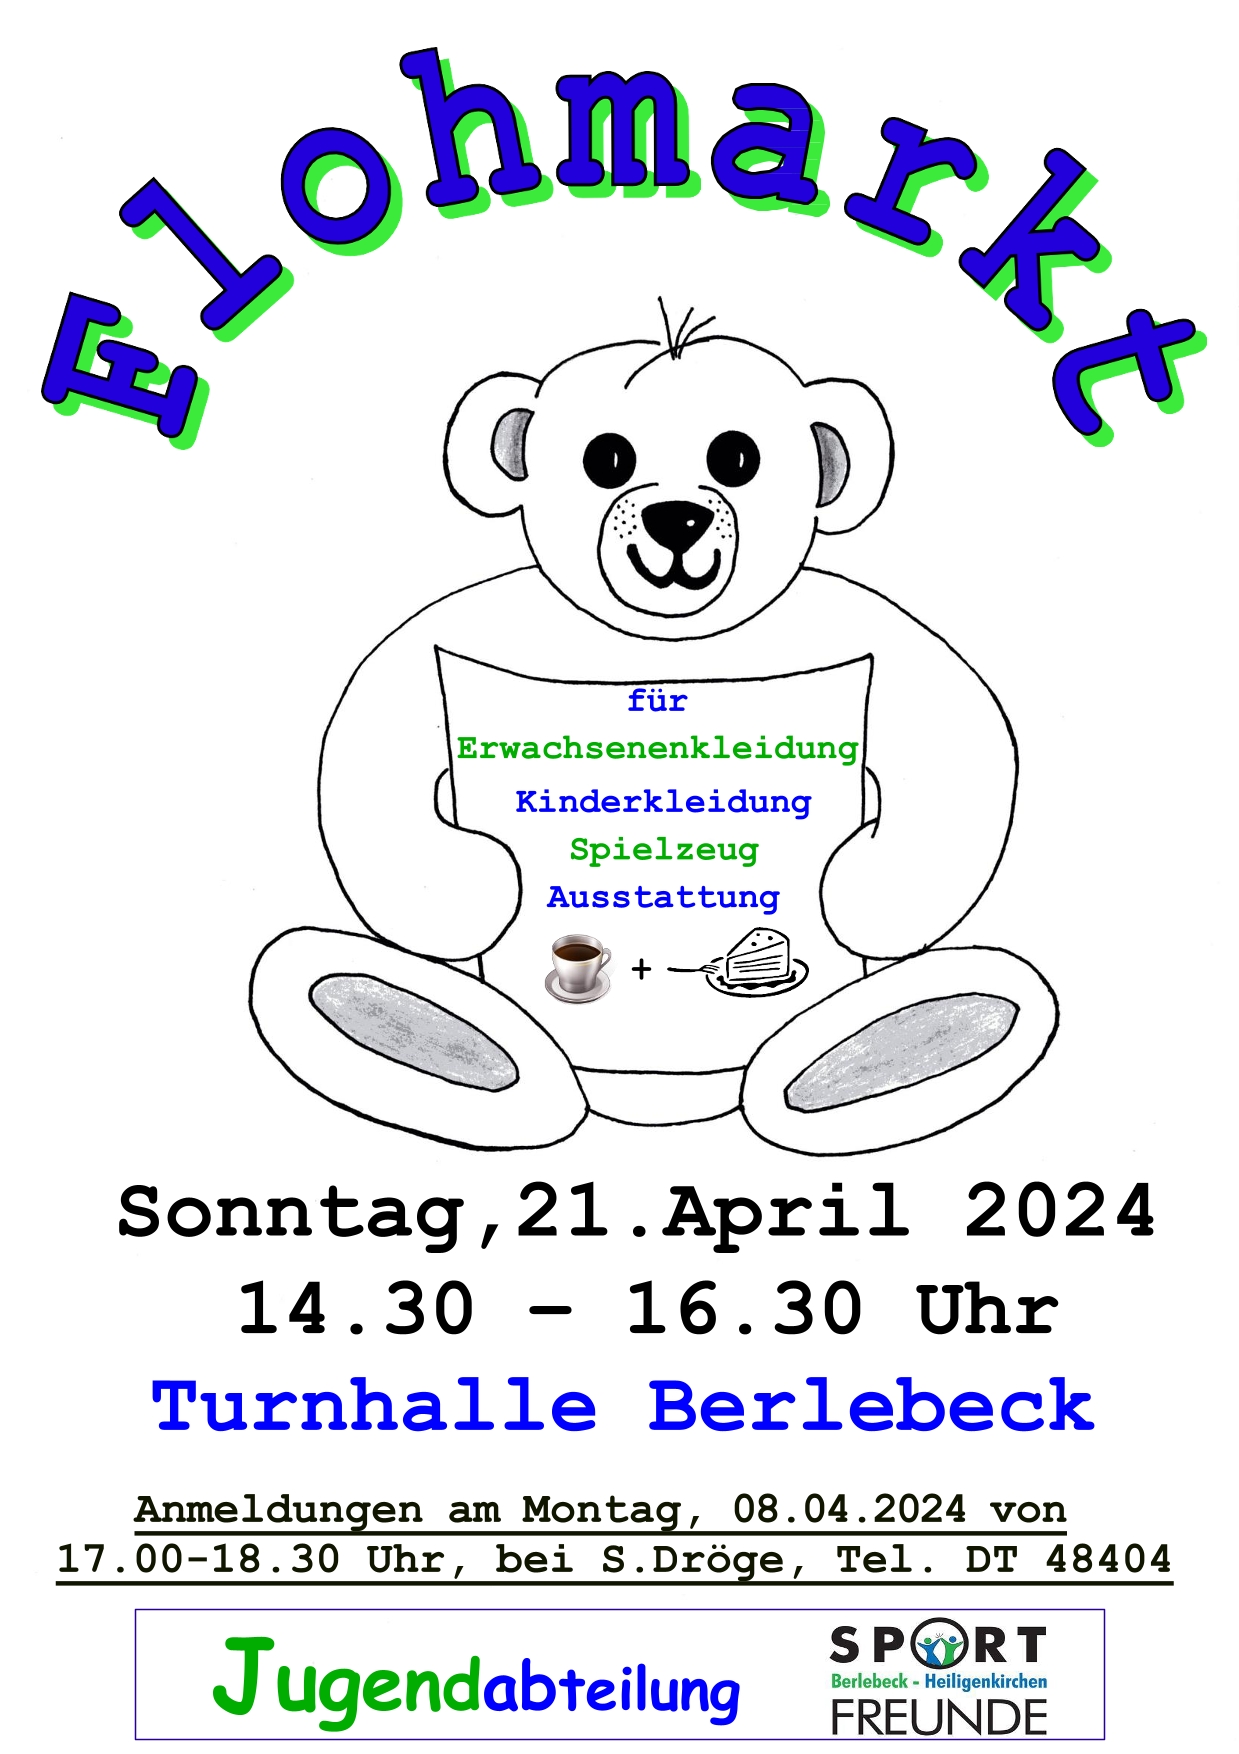 Flohmarkt am 21.04.24 der Sportfreunde Berlebeck-Heilgenkirchen